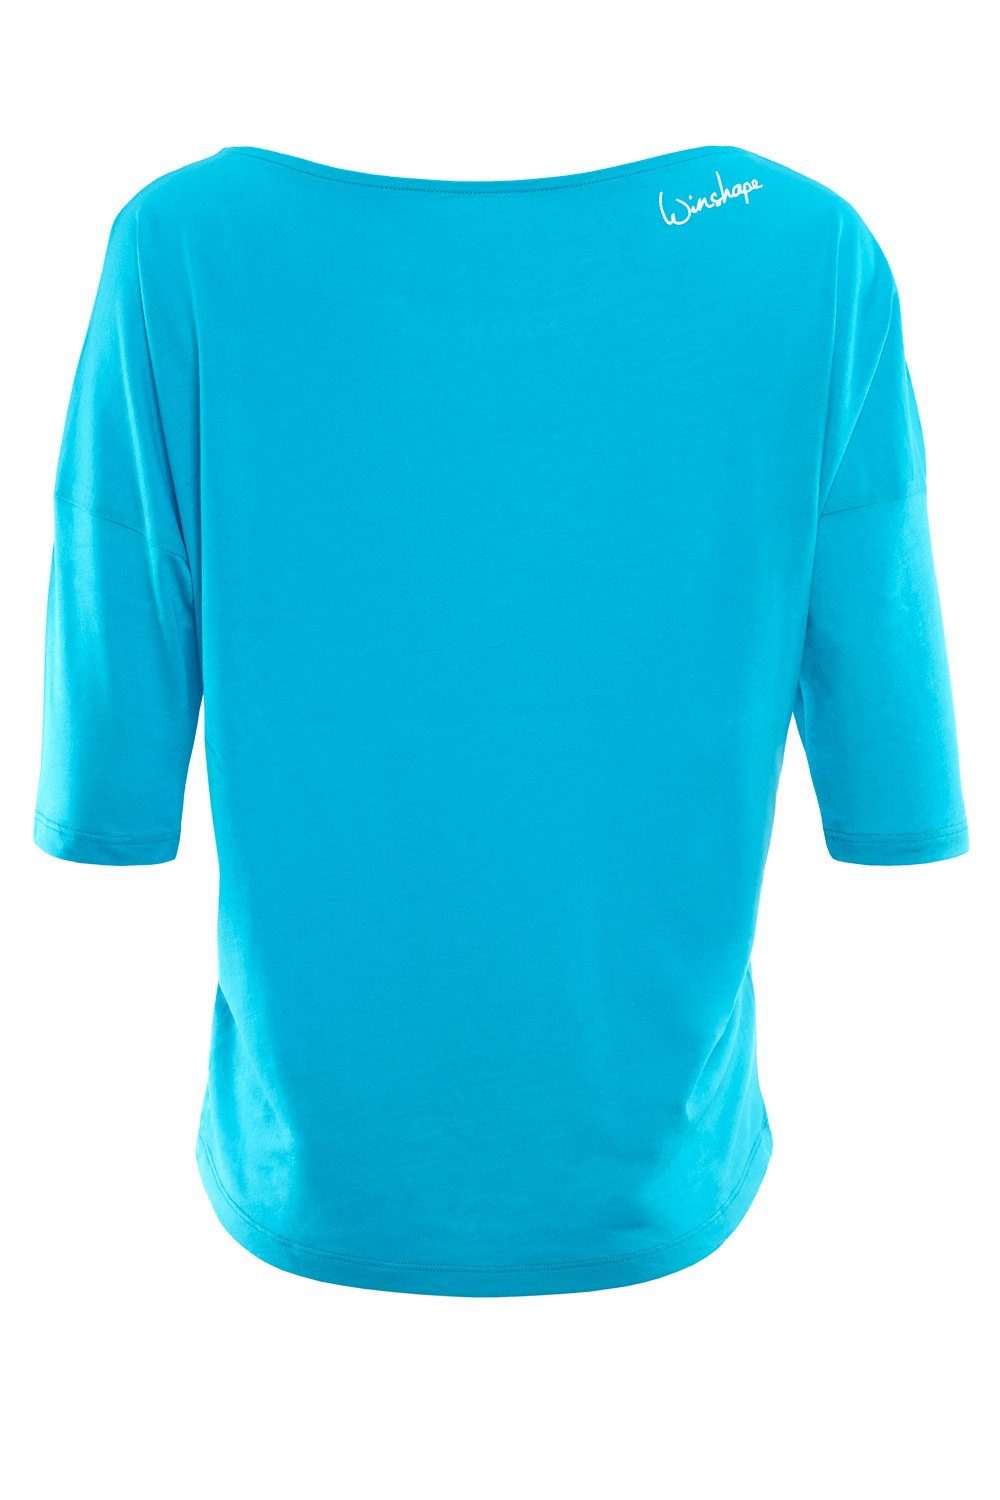 Winshape 3/4-Arm-Shirt MCS001 ultra leicht mit sky blue weiß - glitzer Glitzer-Aufdruck weißem